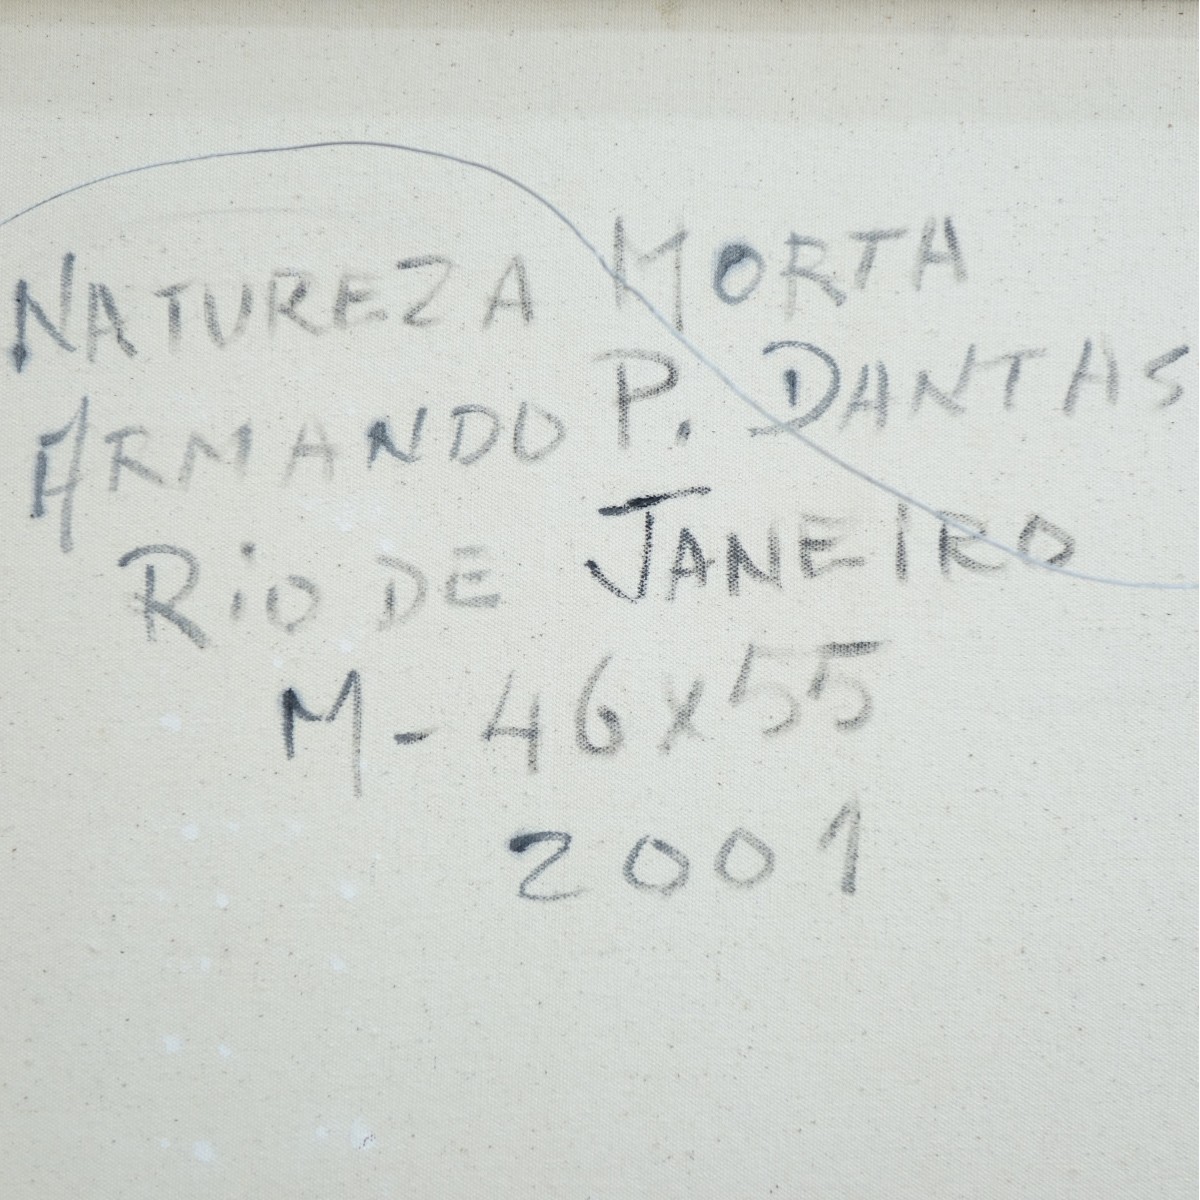 Armando P. Dantas, Brazilian (20th c.)